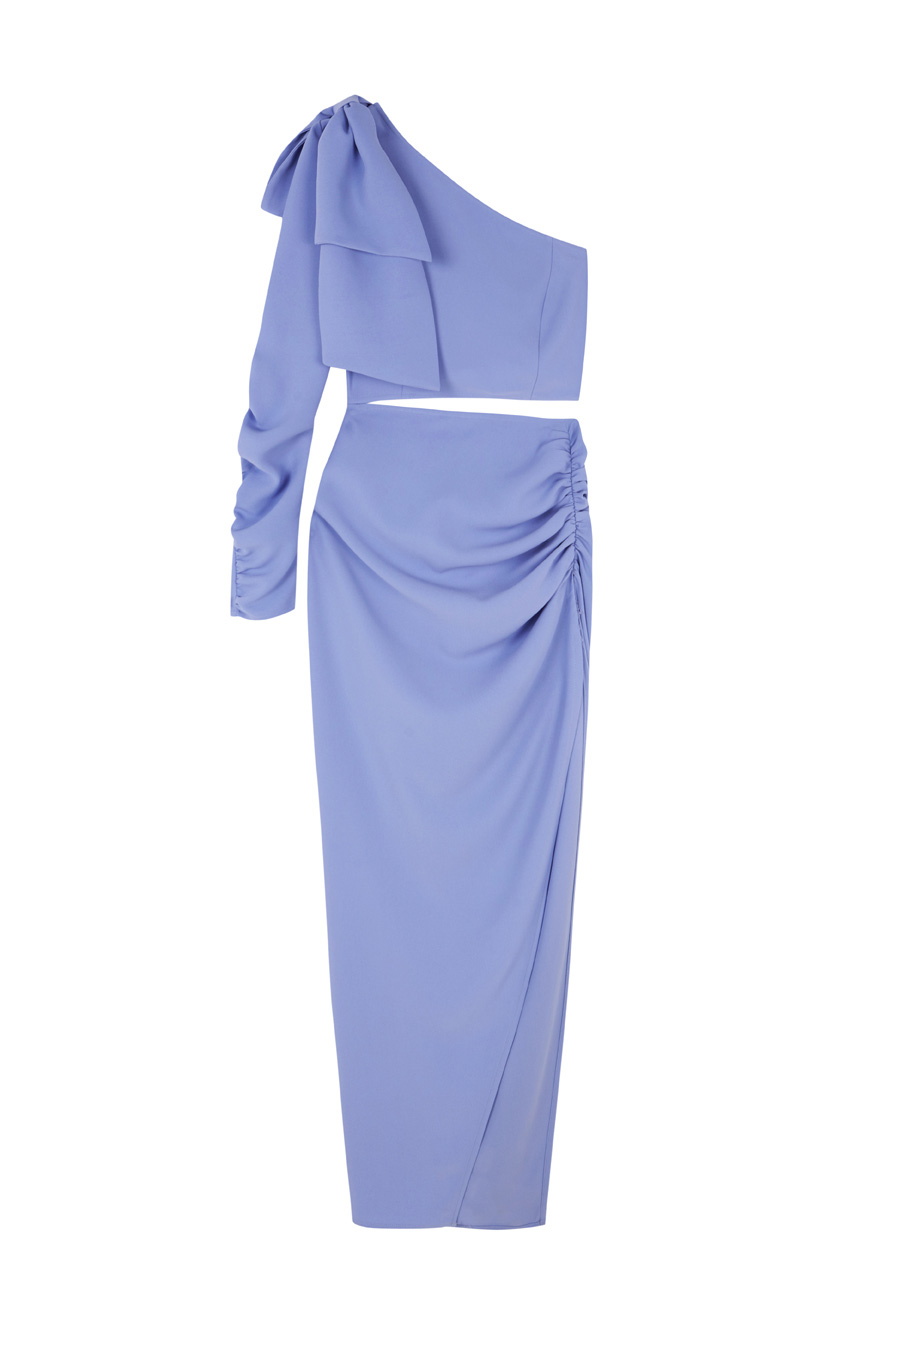 Vestido azul asimentrico con una manga y abertura lateral